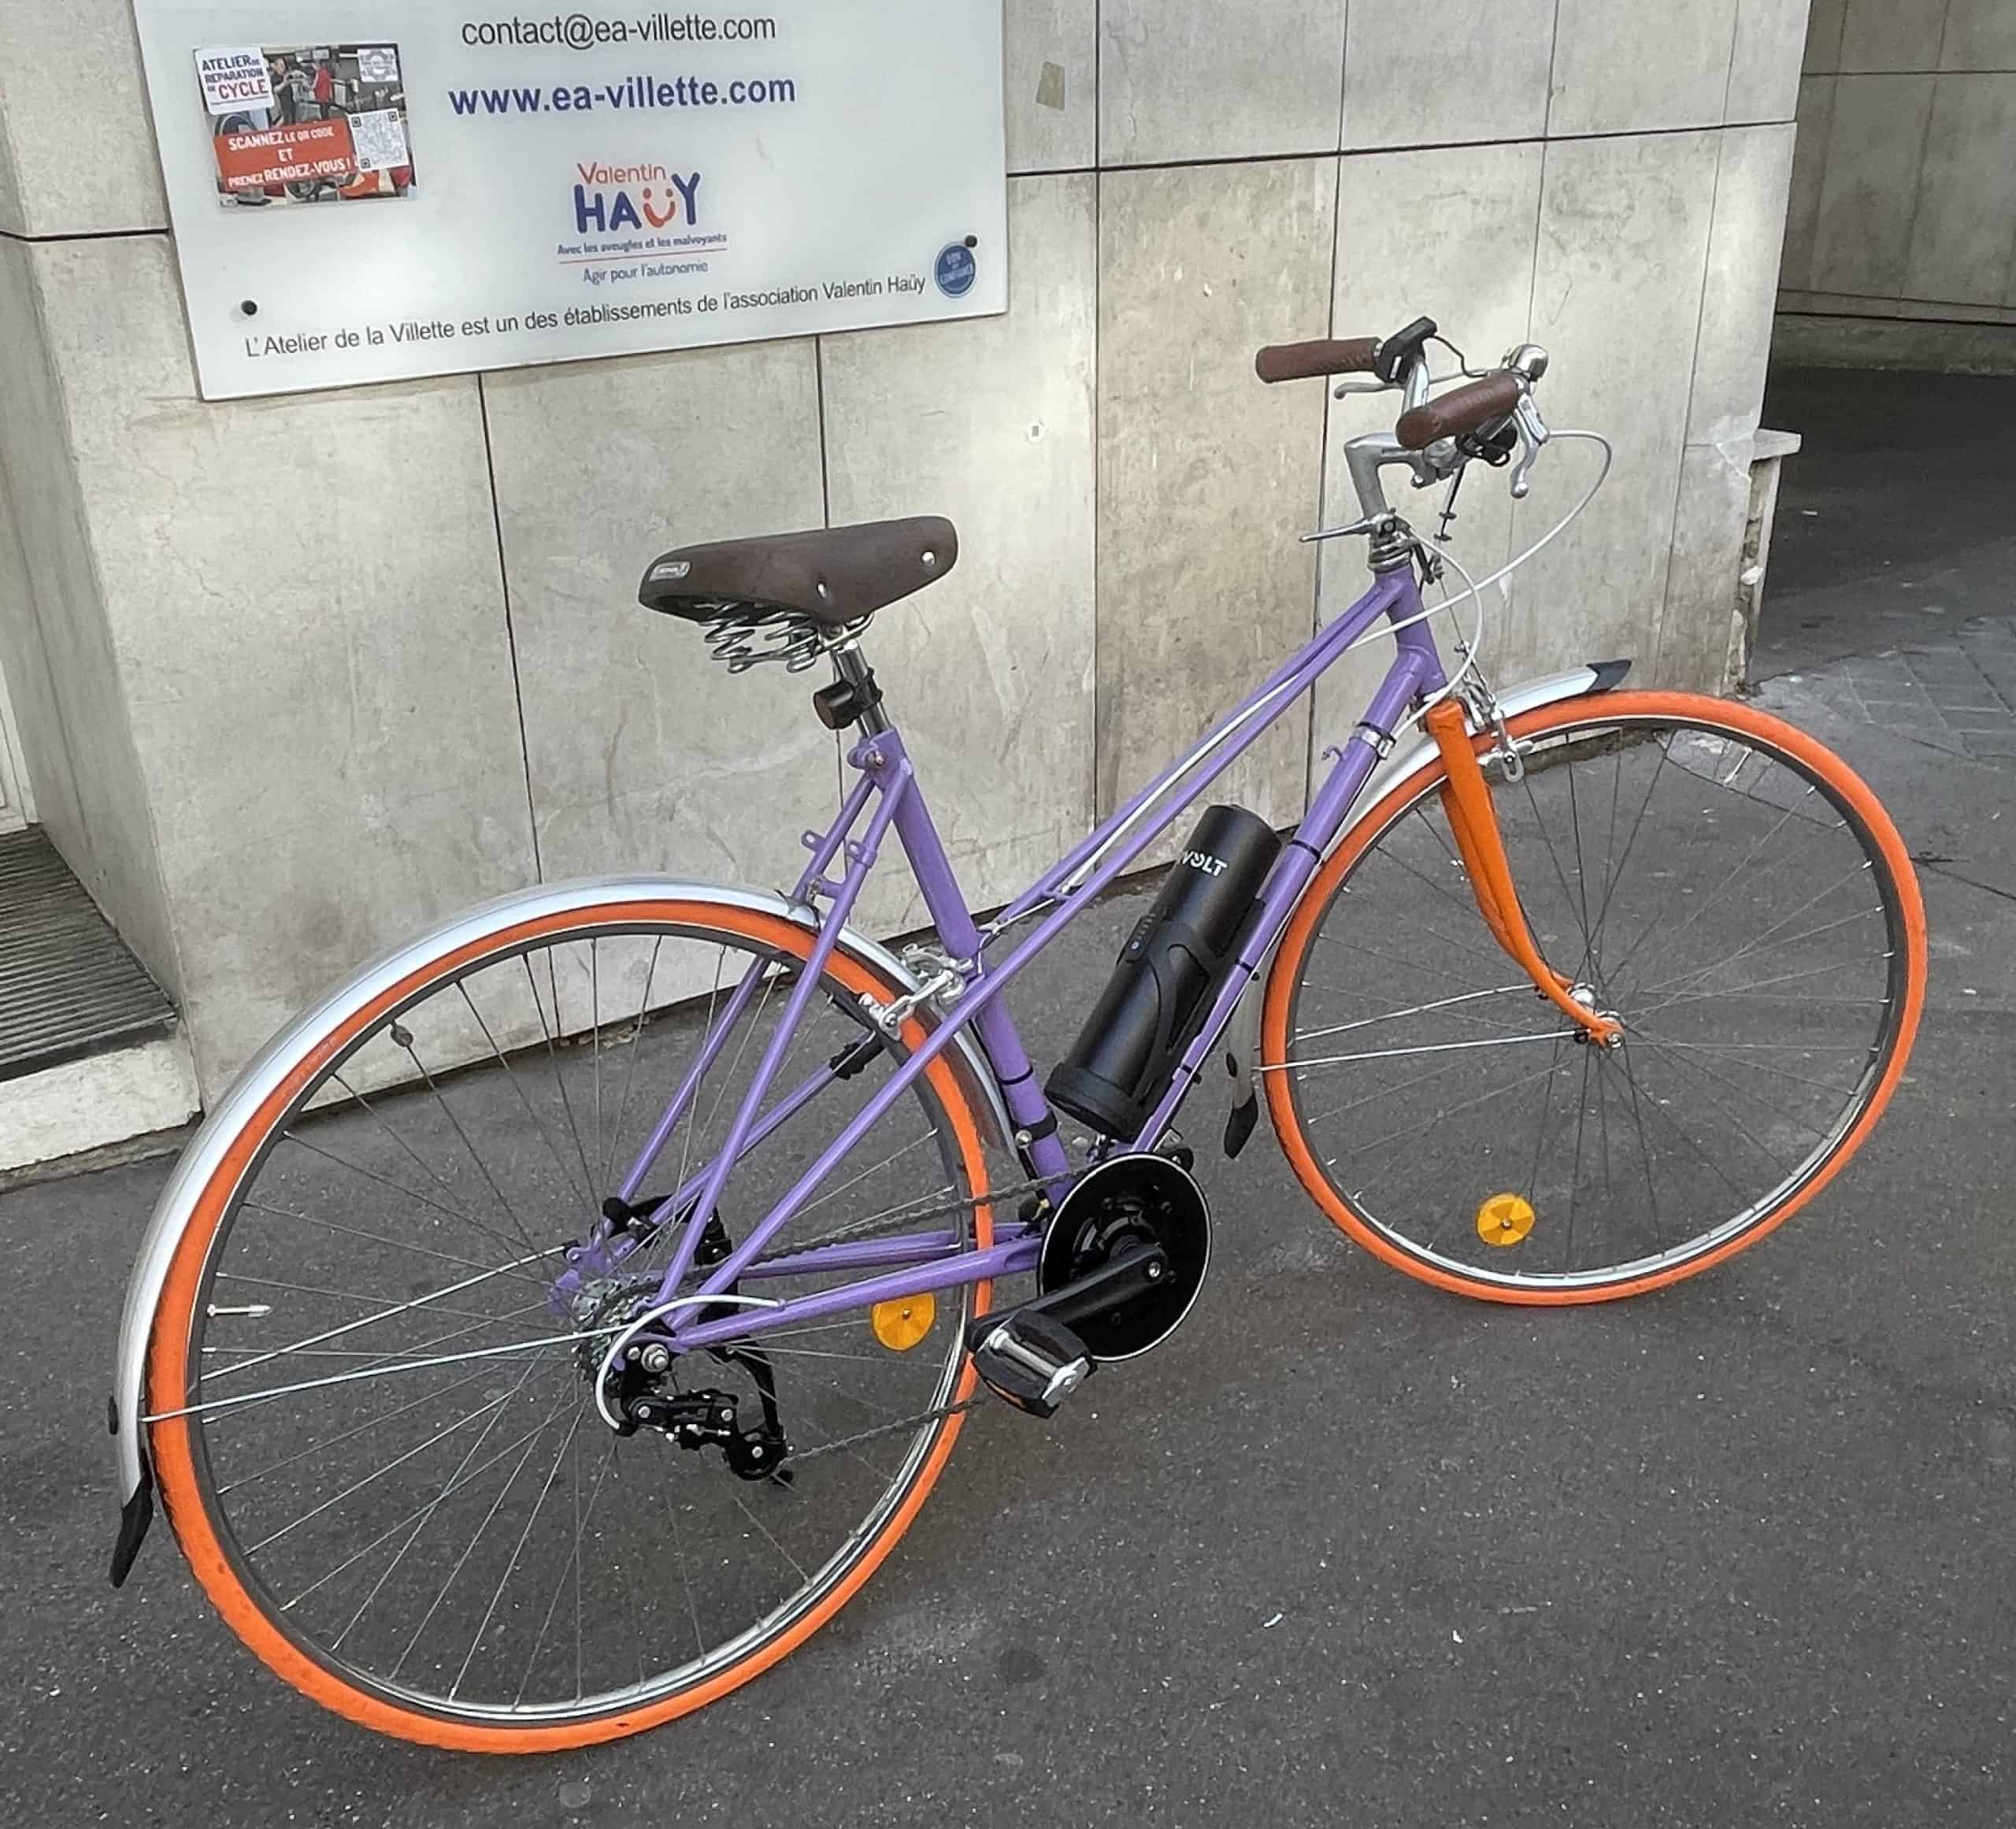 Photo du vélo Raleigh devant Atelier de la Villette